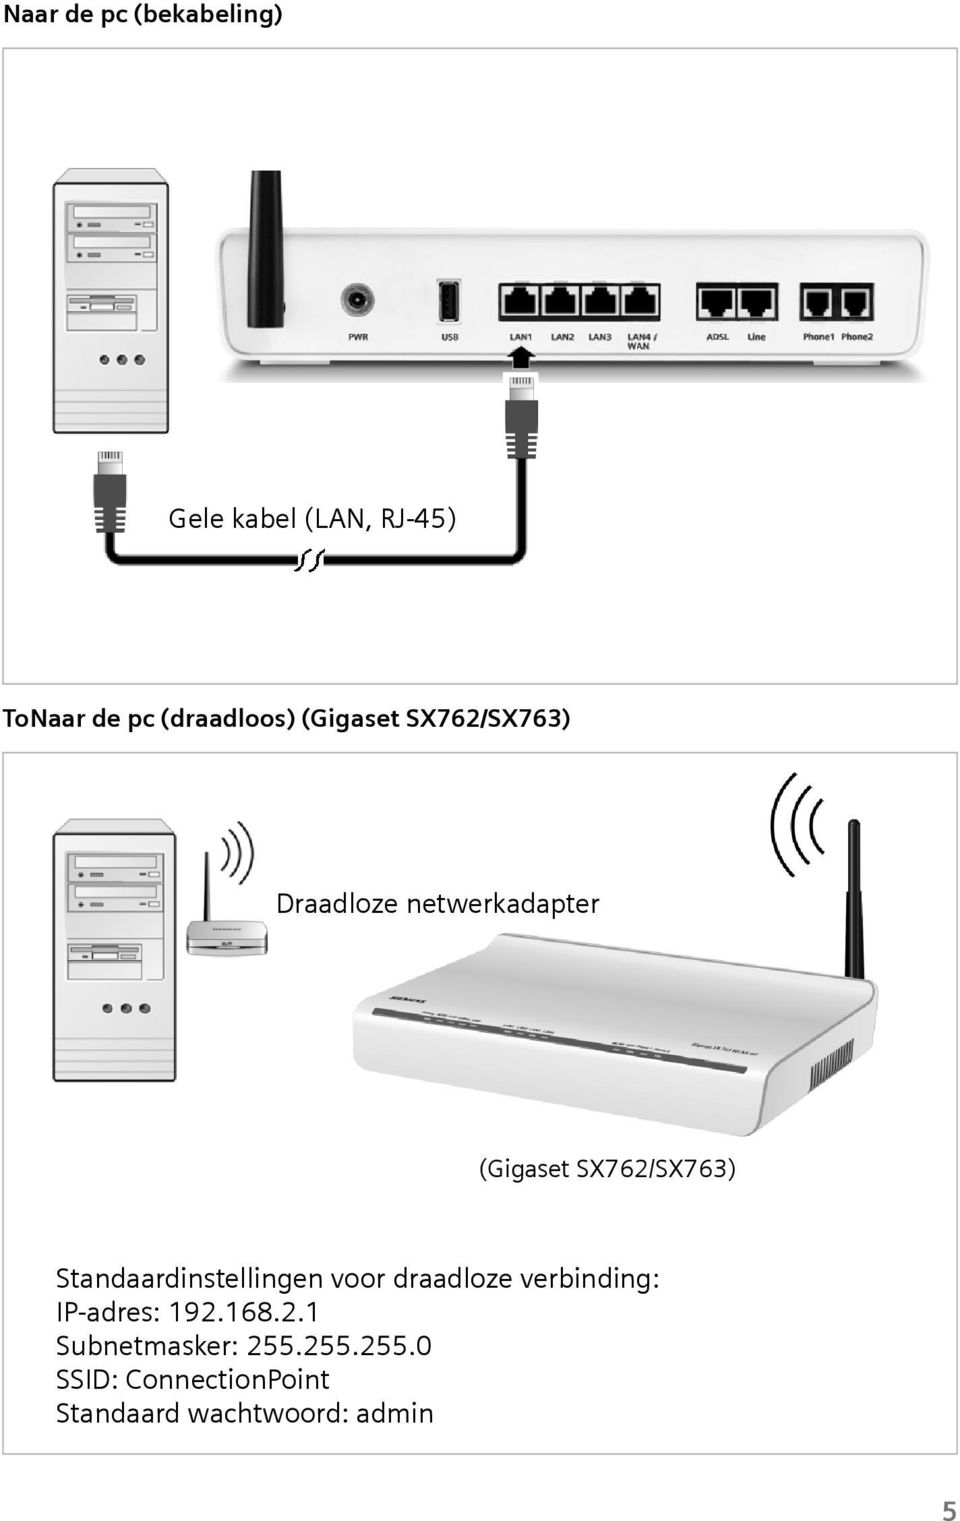 Standaardinstellingen voor draadloze verbinding: IP-adres: 192.